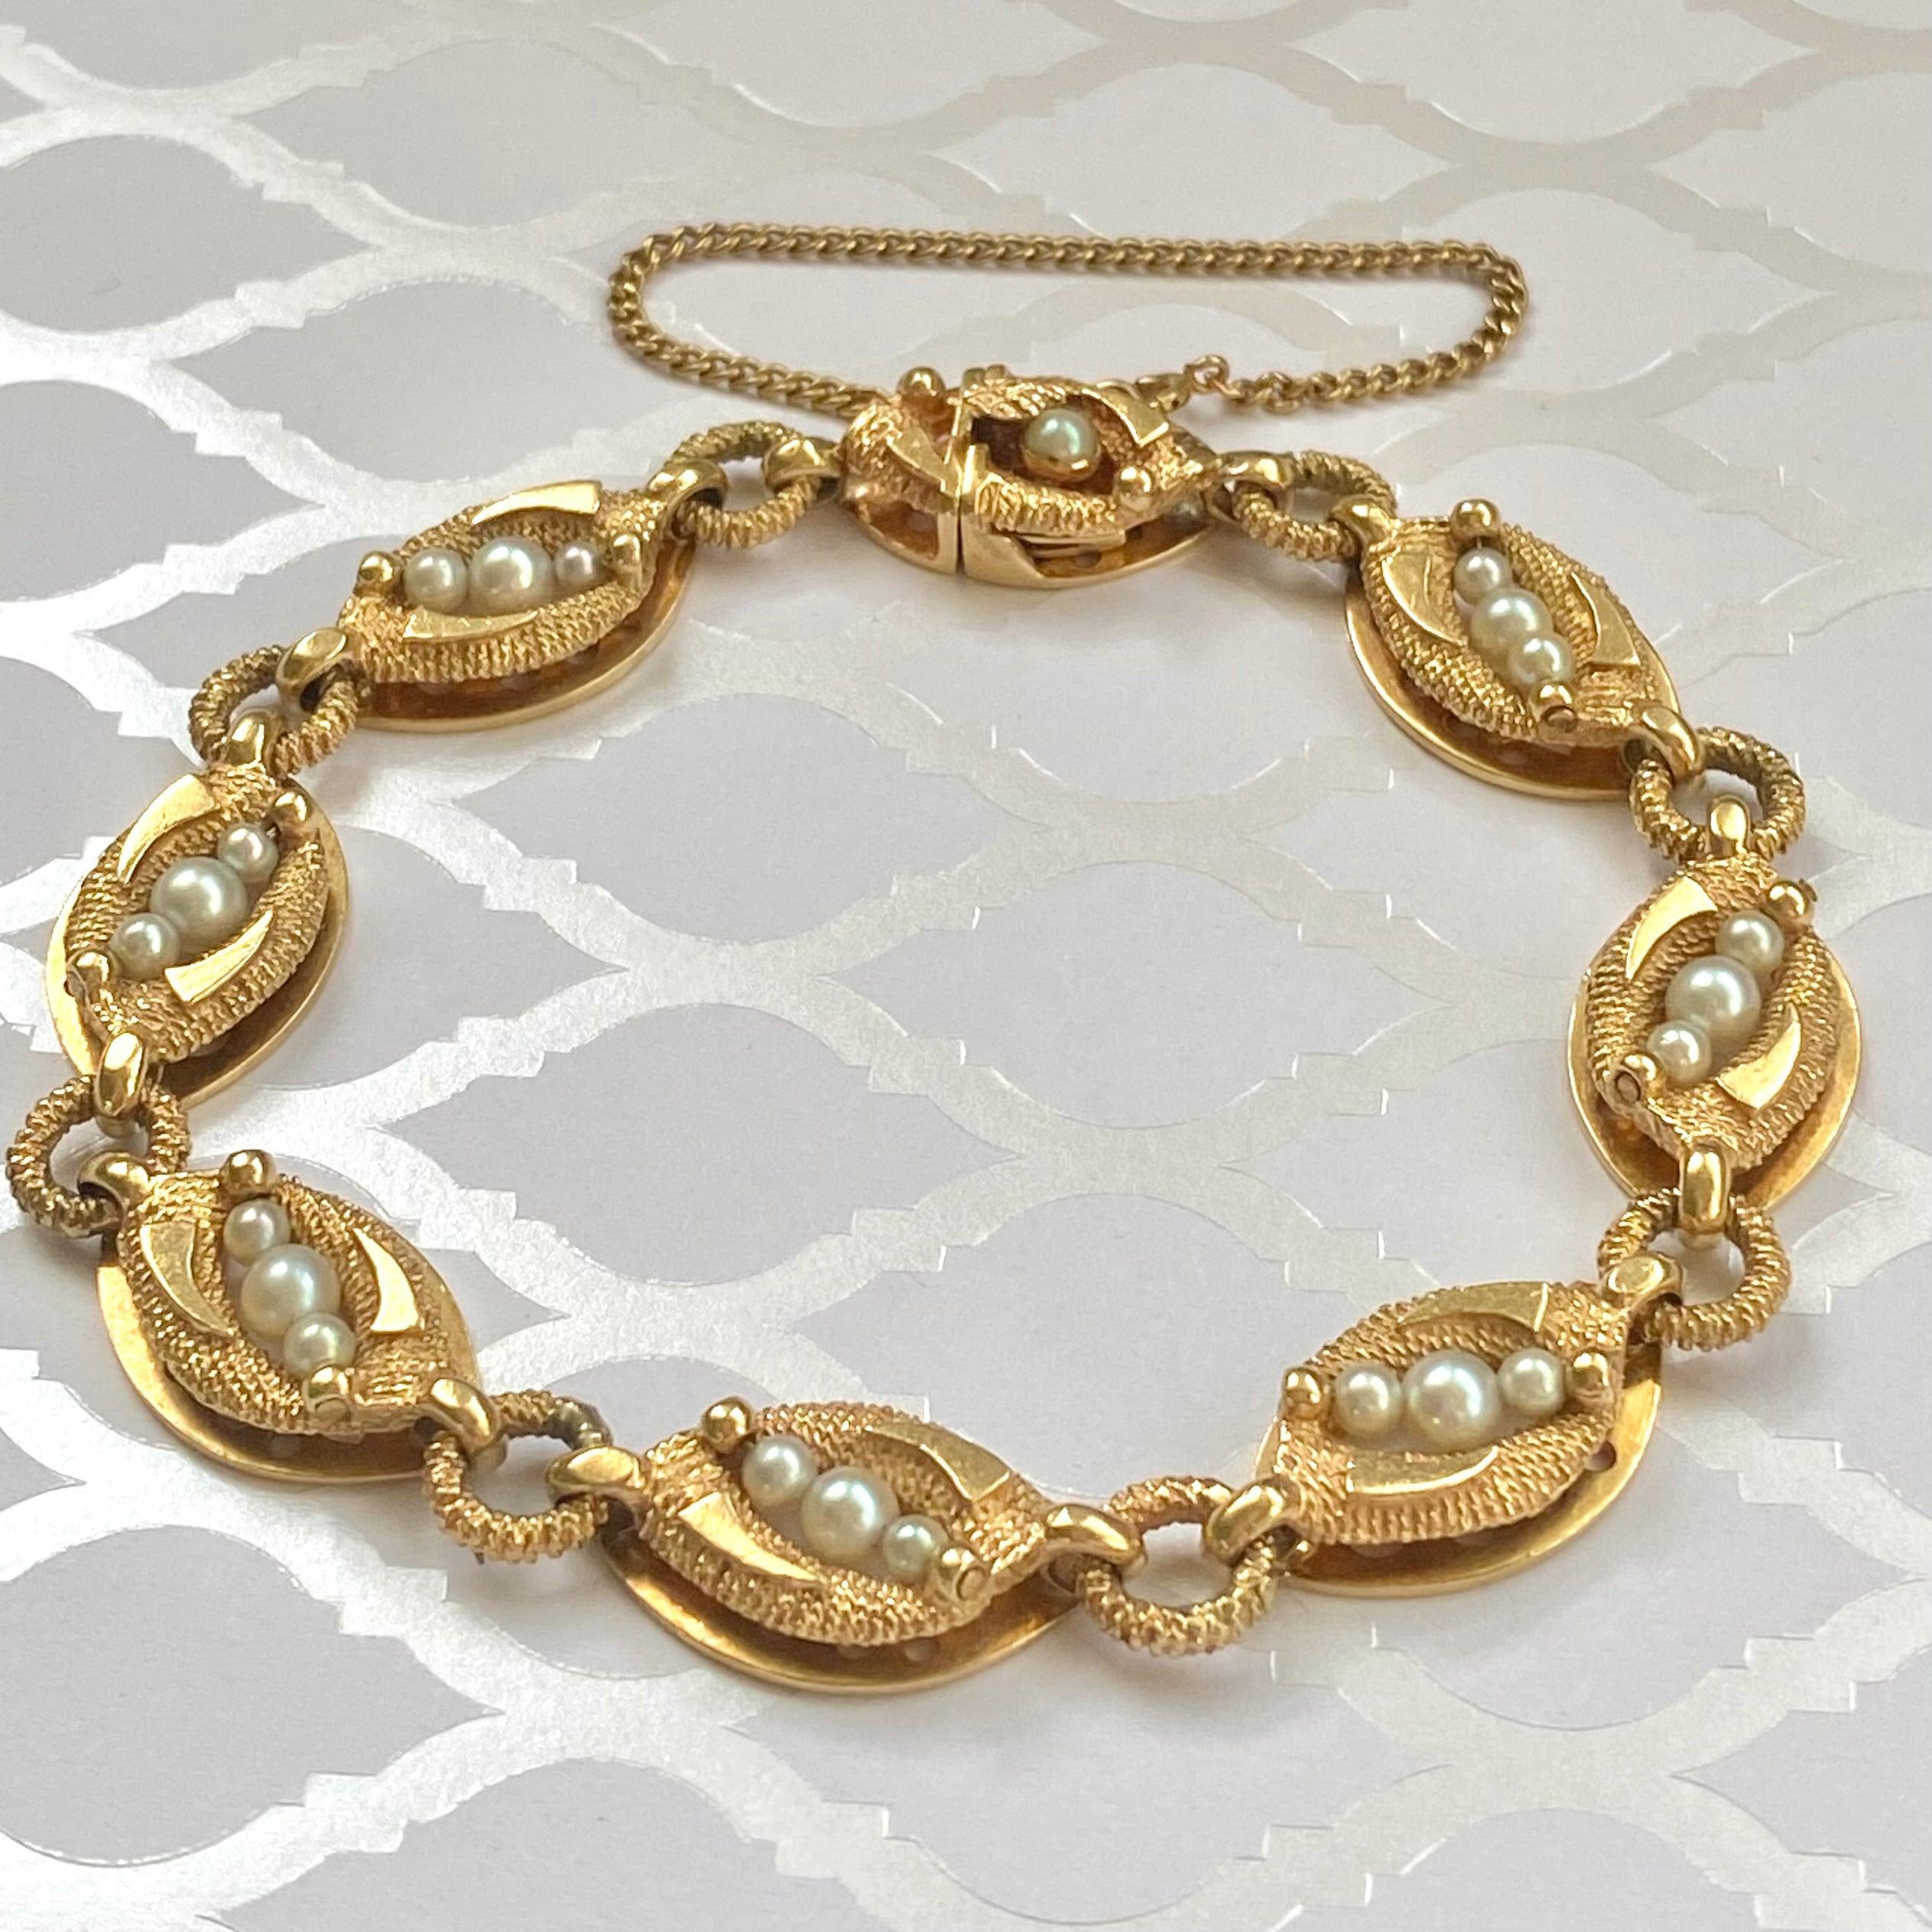 Armband La Triomphe 14K, bestehend aus einer Reihe von länglichen Goldgliedern, die durch Goldreifen verbunden sind. Jedes Glied ist mit drei weißen Perlen besetzt. Der Kontrast von hellem und strukturiertem Finish verleiht dieser Vintage-Schönheit